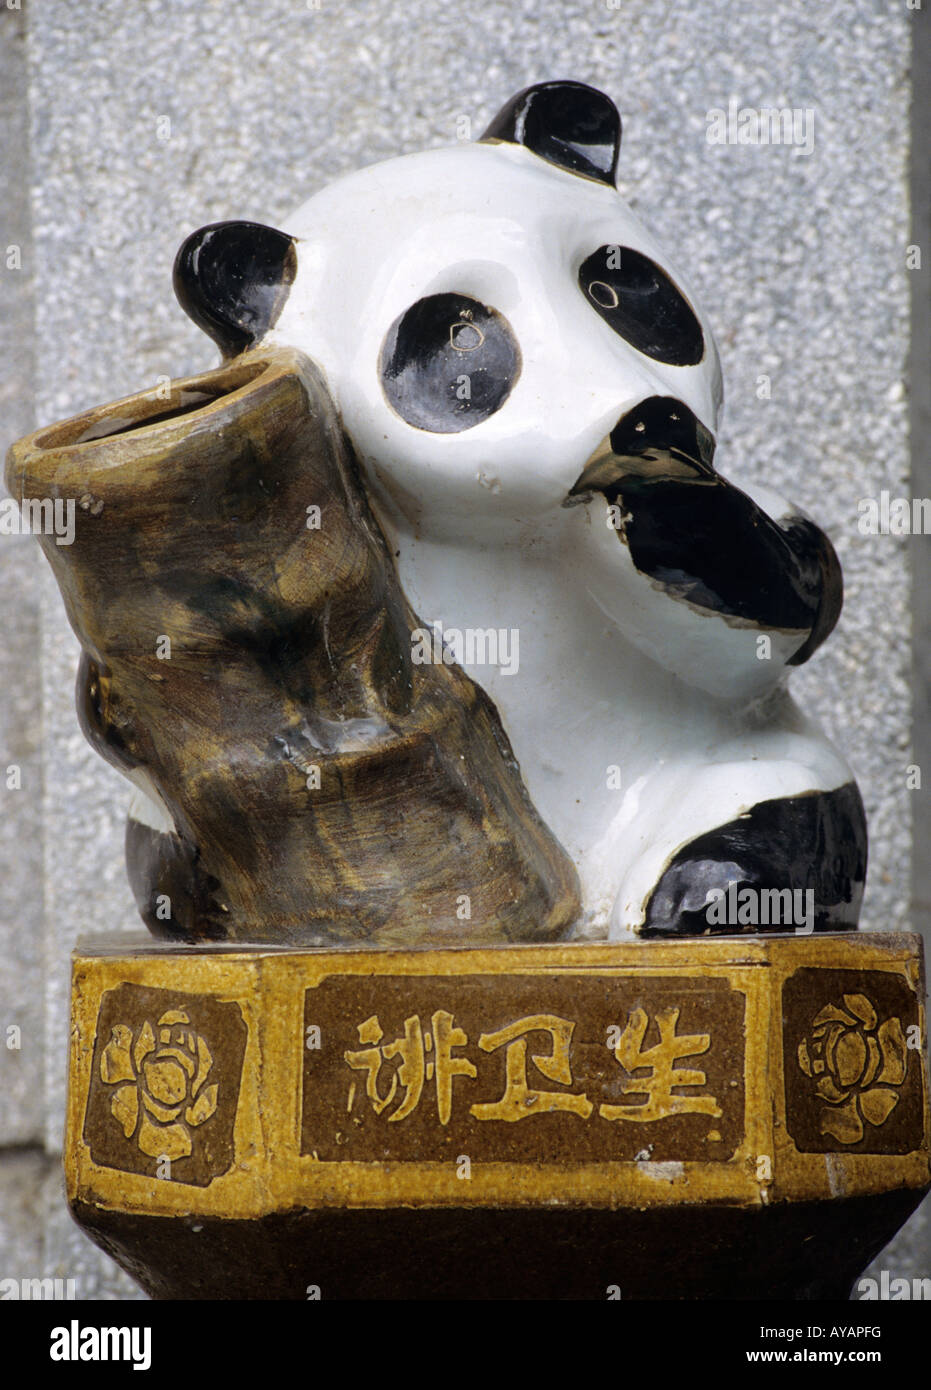 Panda géant de Wolong Chine poubelle Banque D'Images